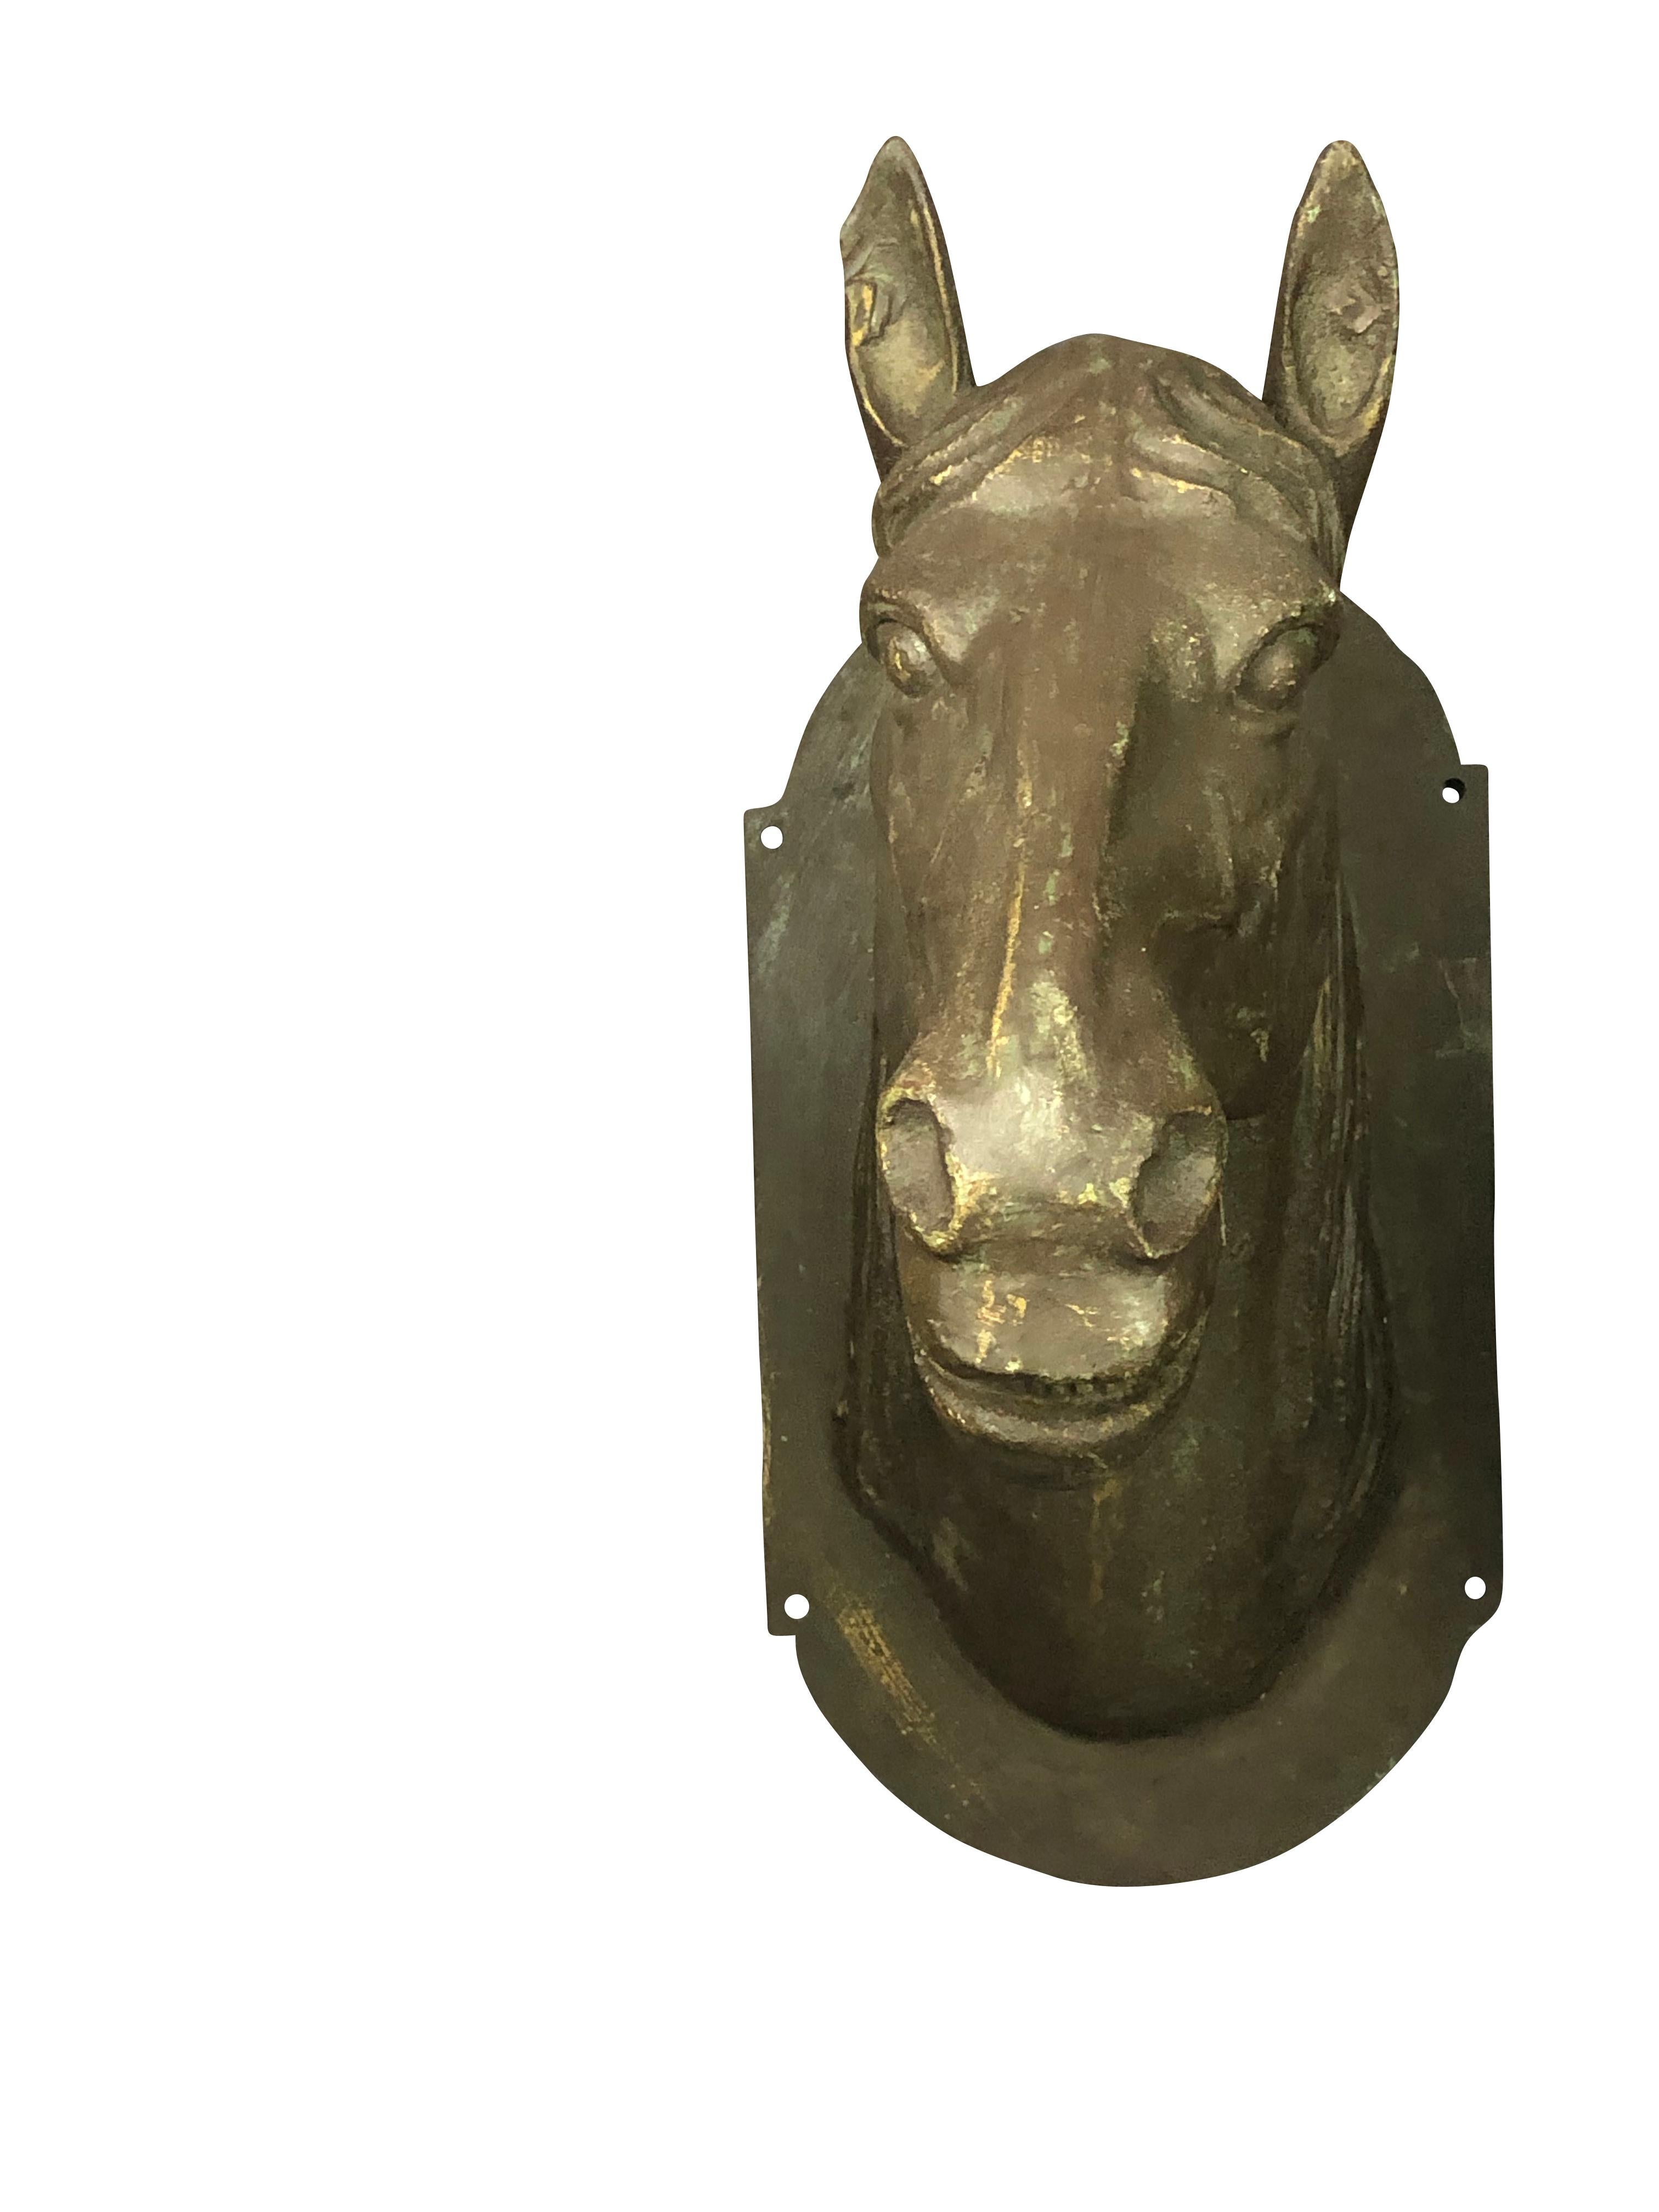 Cast Horse Head Sculptures Life-Size Mixed Metal